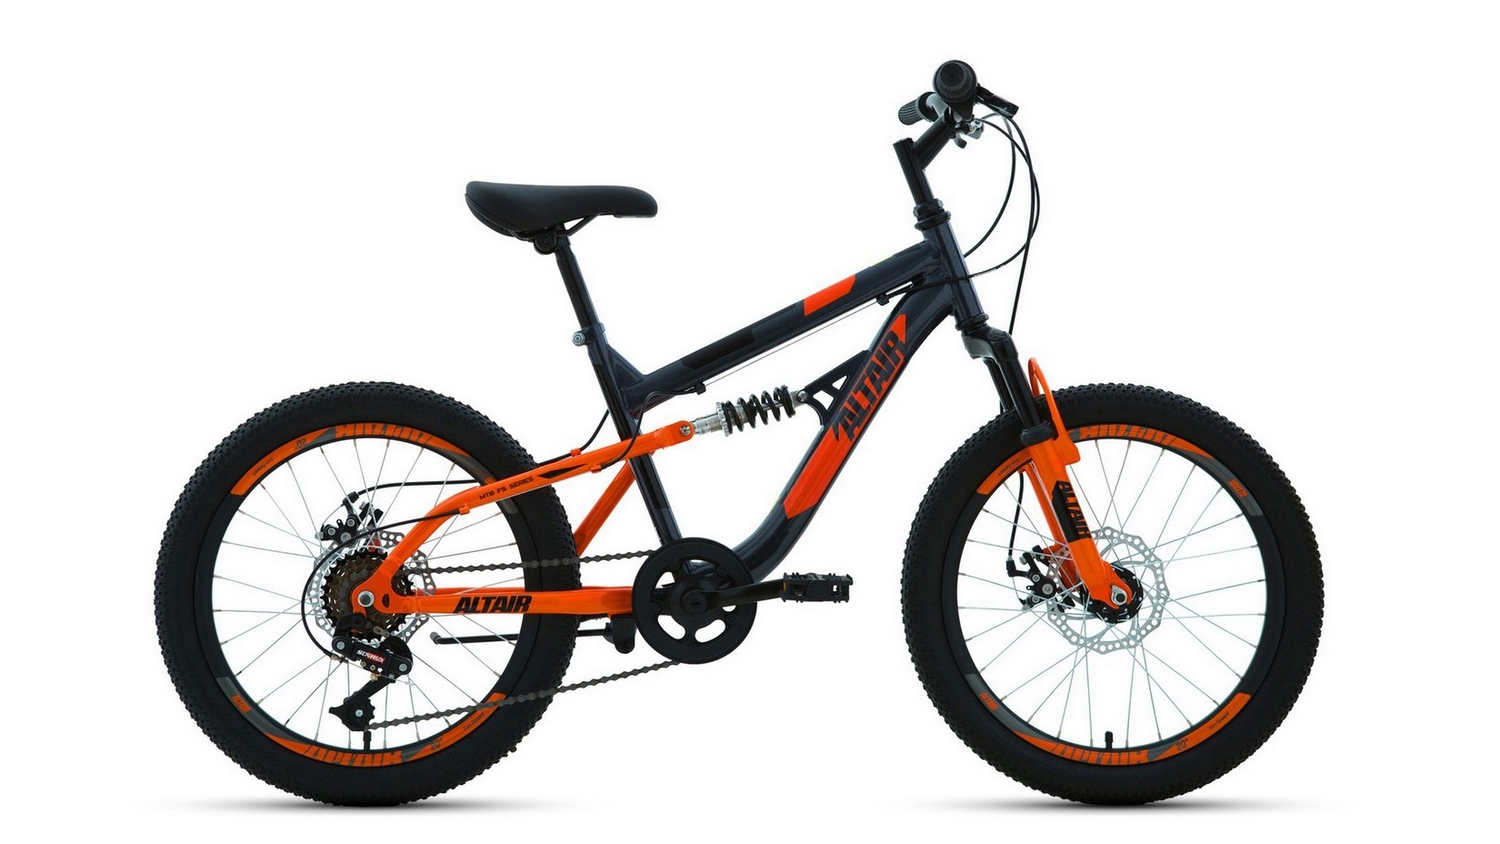 Детский велосипед Altair MTB FS 20 Disc, год 2021, цвет Серебристый-Оранжевый